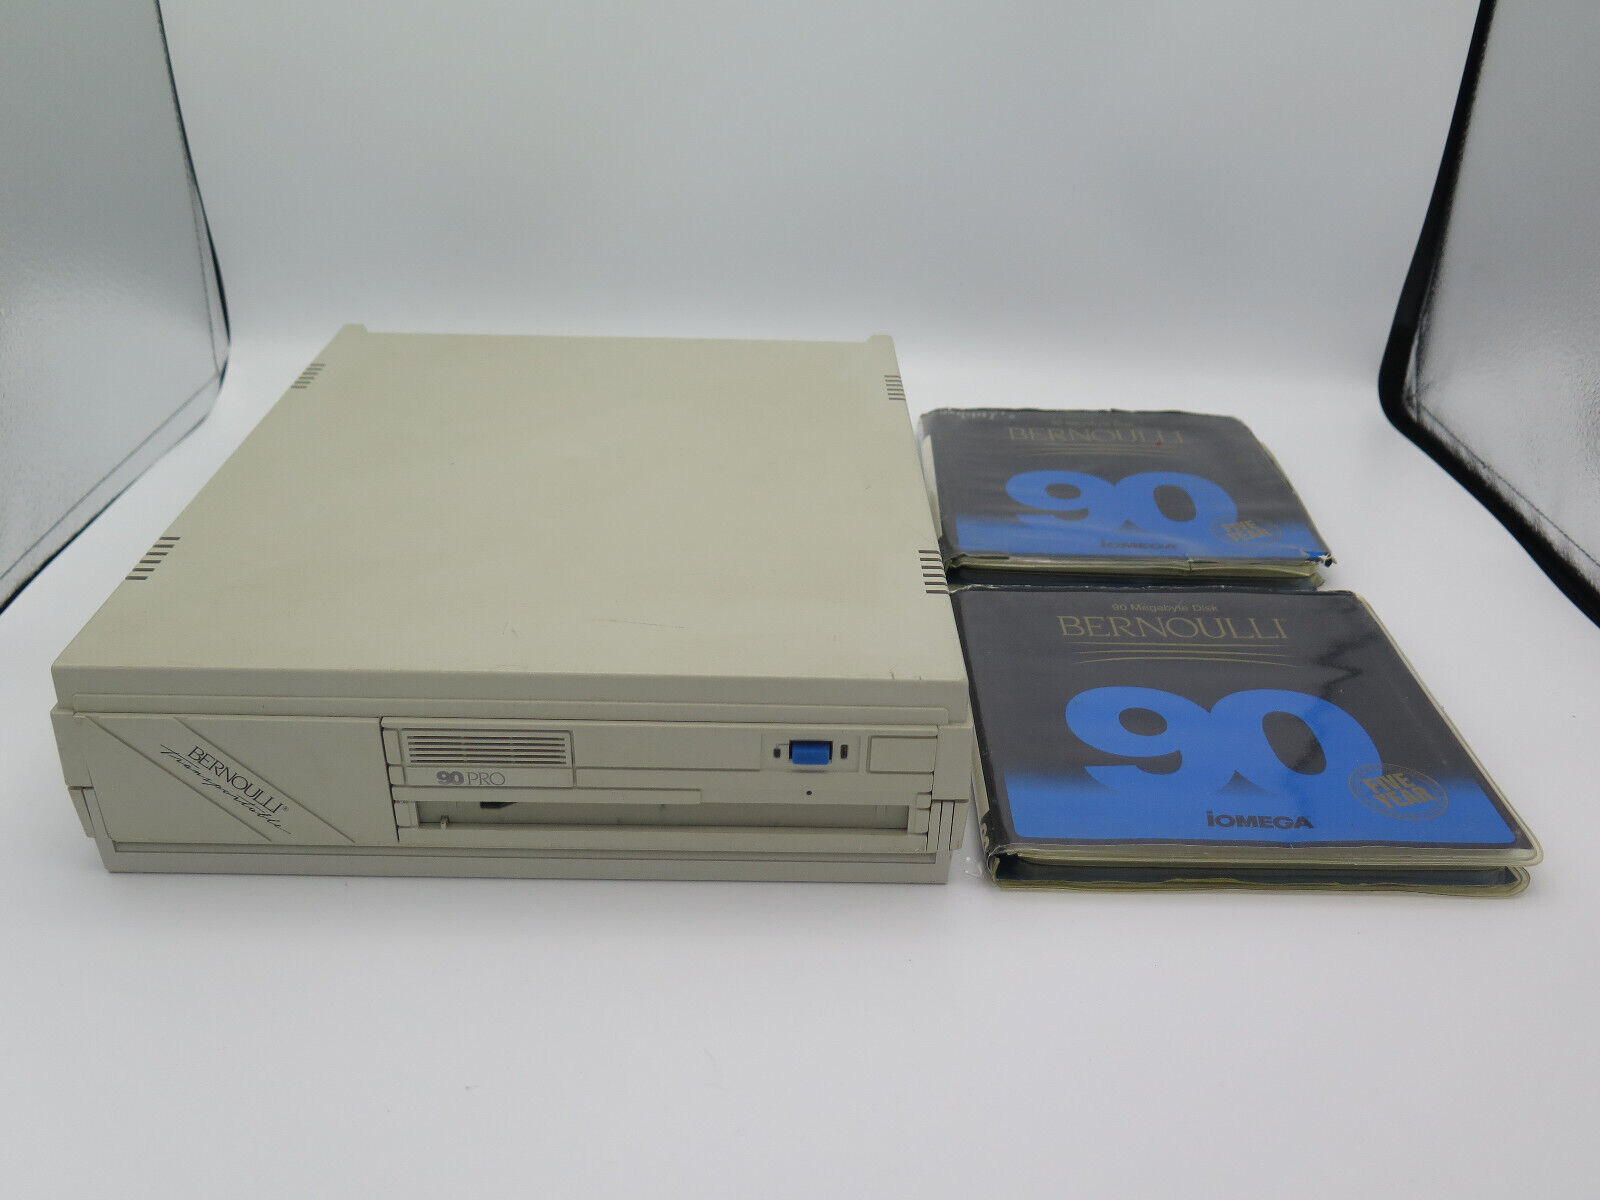 Iomega Bernoulli Box 90 Pro Vintage SCSI Disk Drive w/ 2 Disks